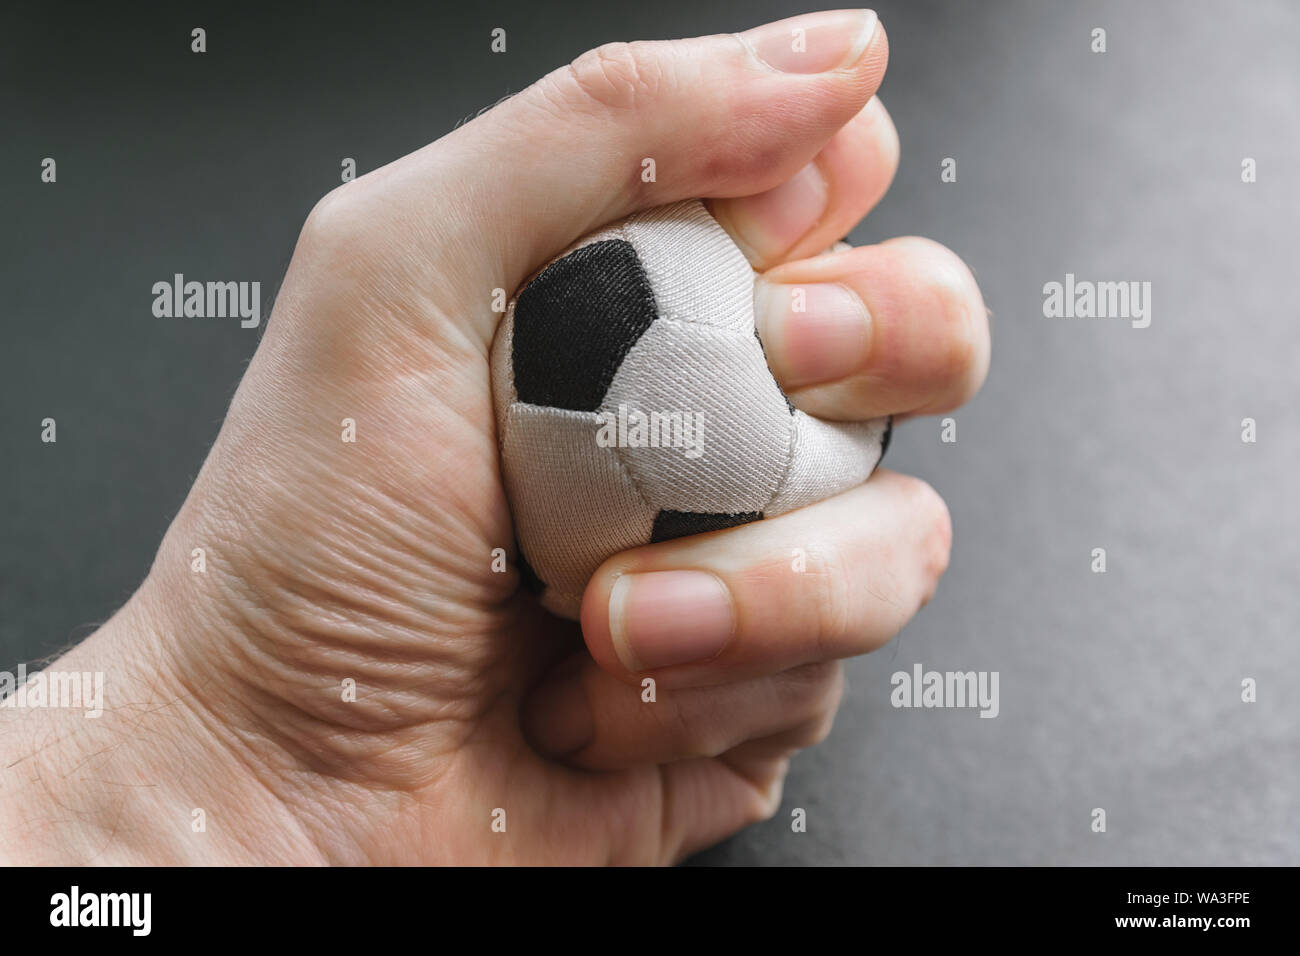 Stringe la mano una piccola palla calcio - foto concettuale. Foto Stock